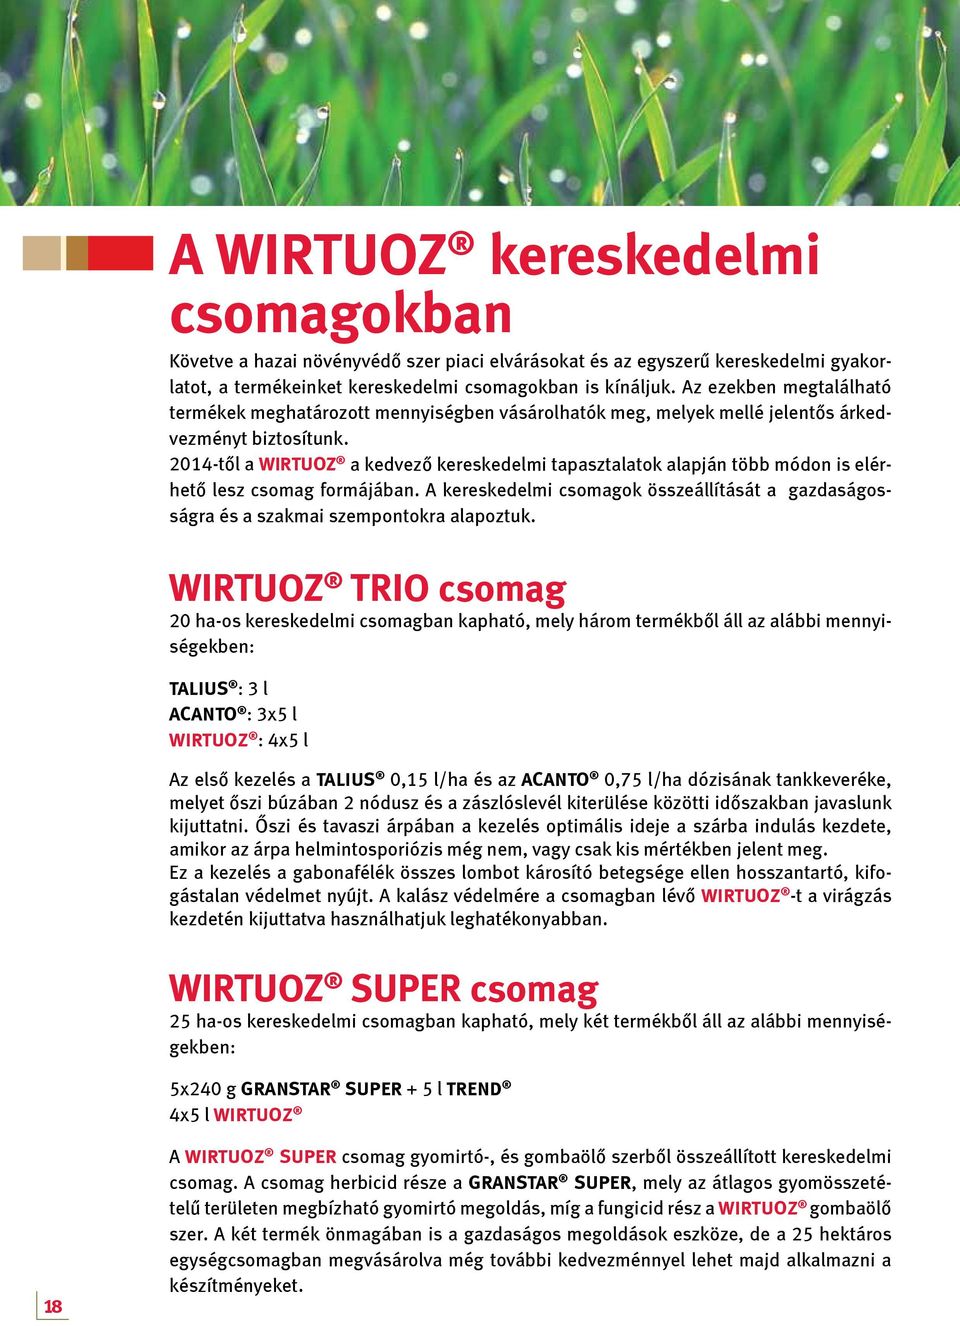 2014-től a Wirtuoz a kedvező kereskedelmi tapasztalatok alapján több módon is elérhető lesz csomag formájában.